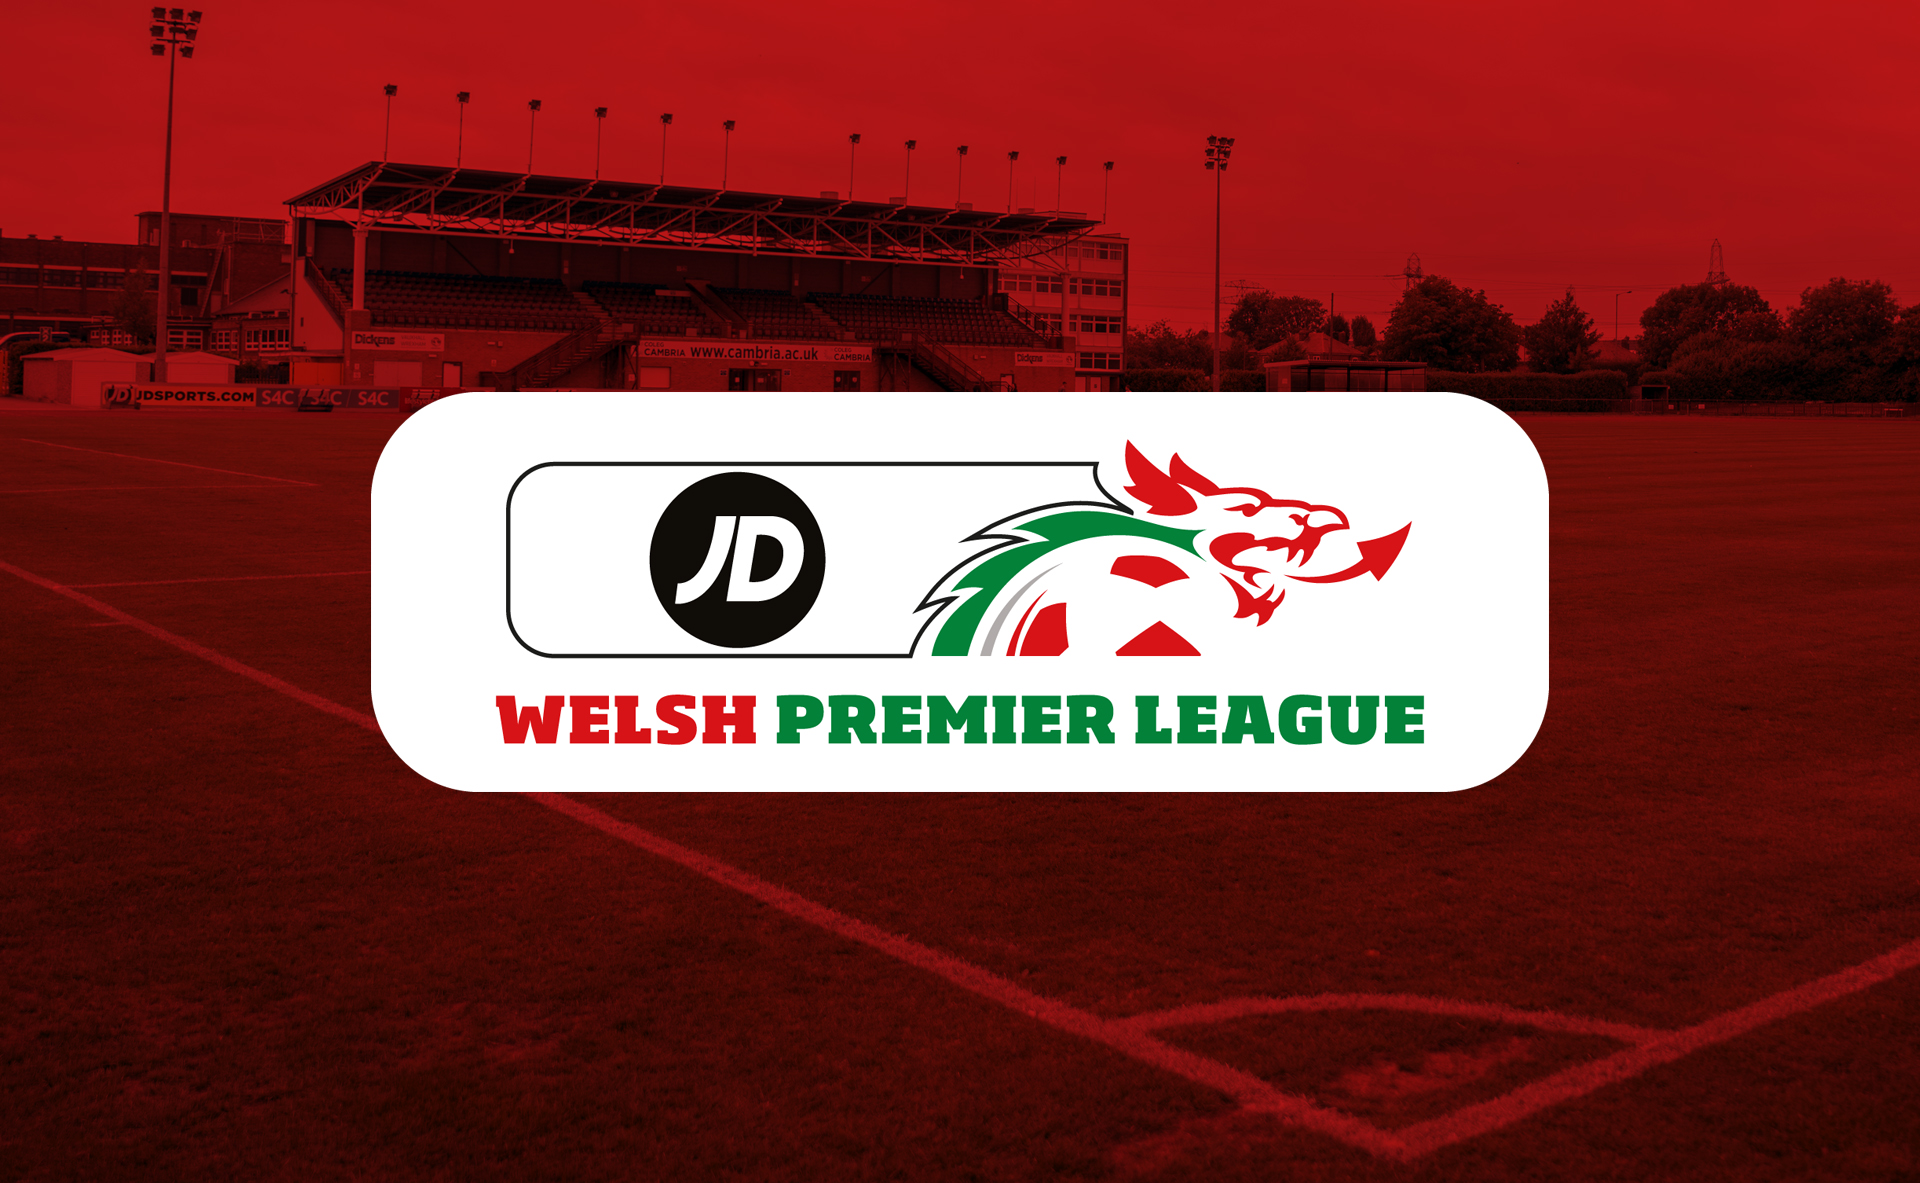 JD Welsh Premier League 2019/20 Fixtures for Connah's Quay Nomads FC